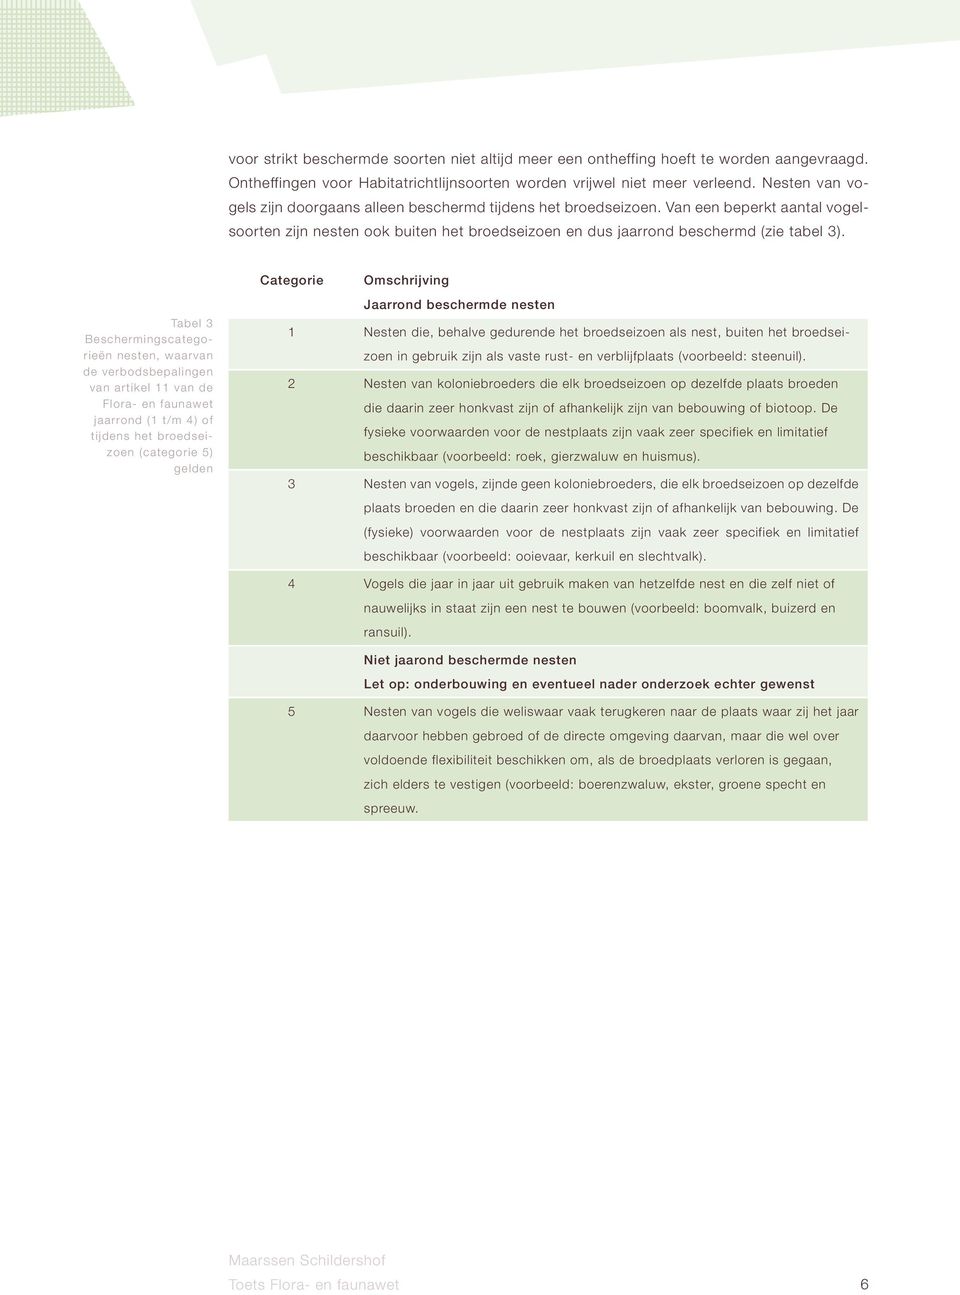 Tabel 3 Beschermingscategorieën nesten, waarvan de verbodsbepalingen van artikel 11 van de Flora- en faunawet jaarrond (1 t/m 4) of tijdens het broedseizoen (categorie 5) gelden Categorie